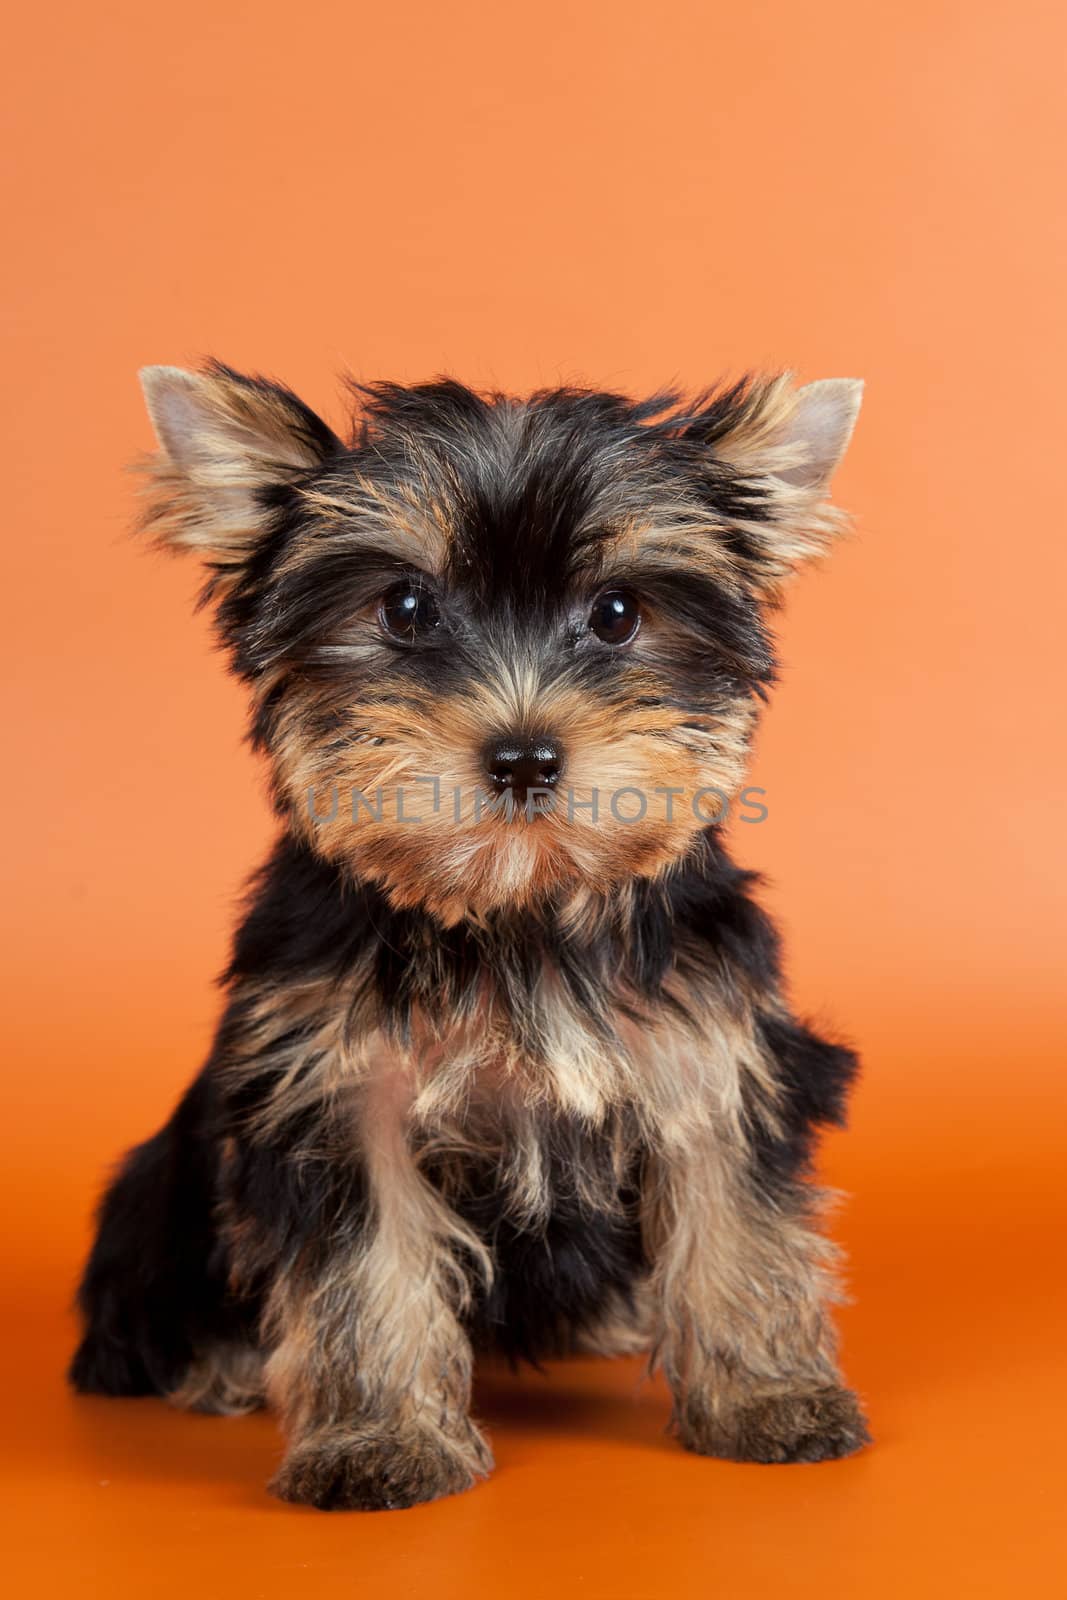 Puppy on orange background